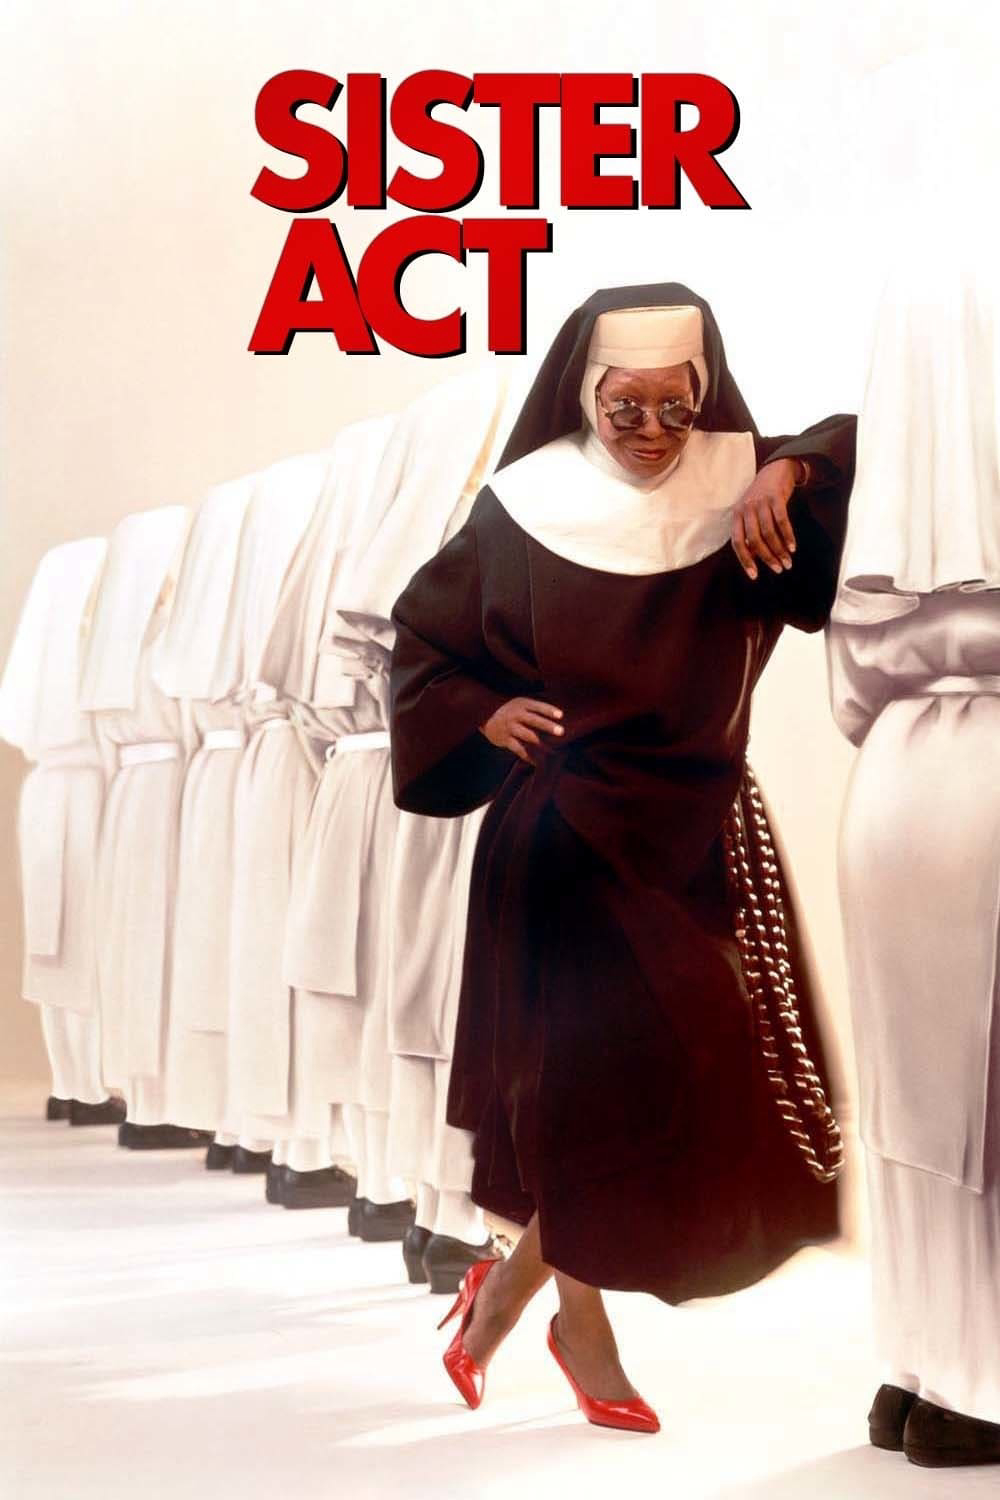 Poster Phim Khi Các Sơ Hành Động (Sister Act)